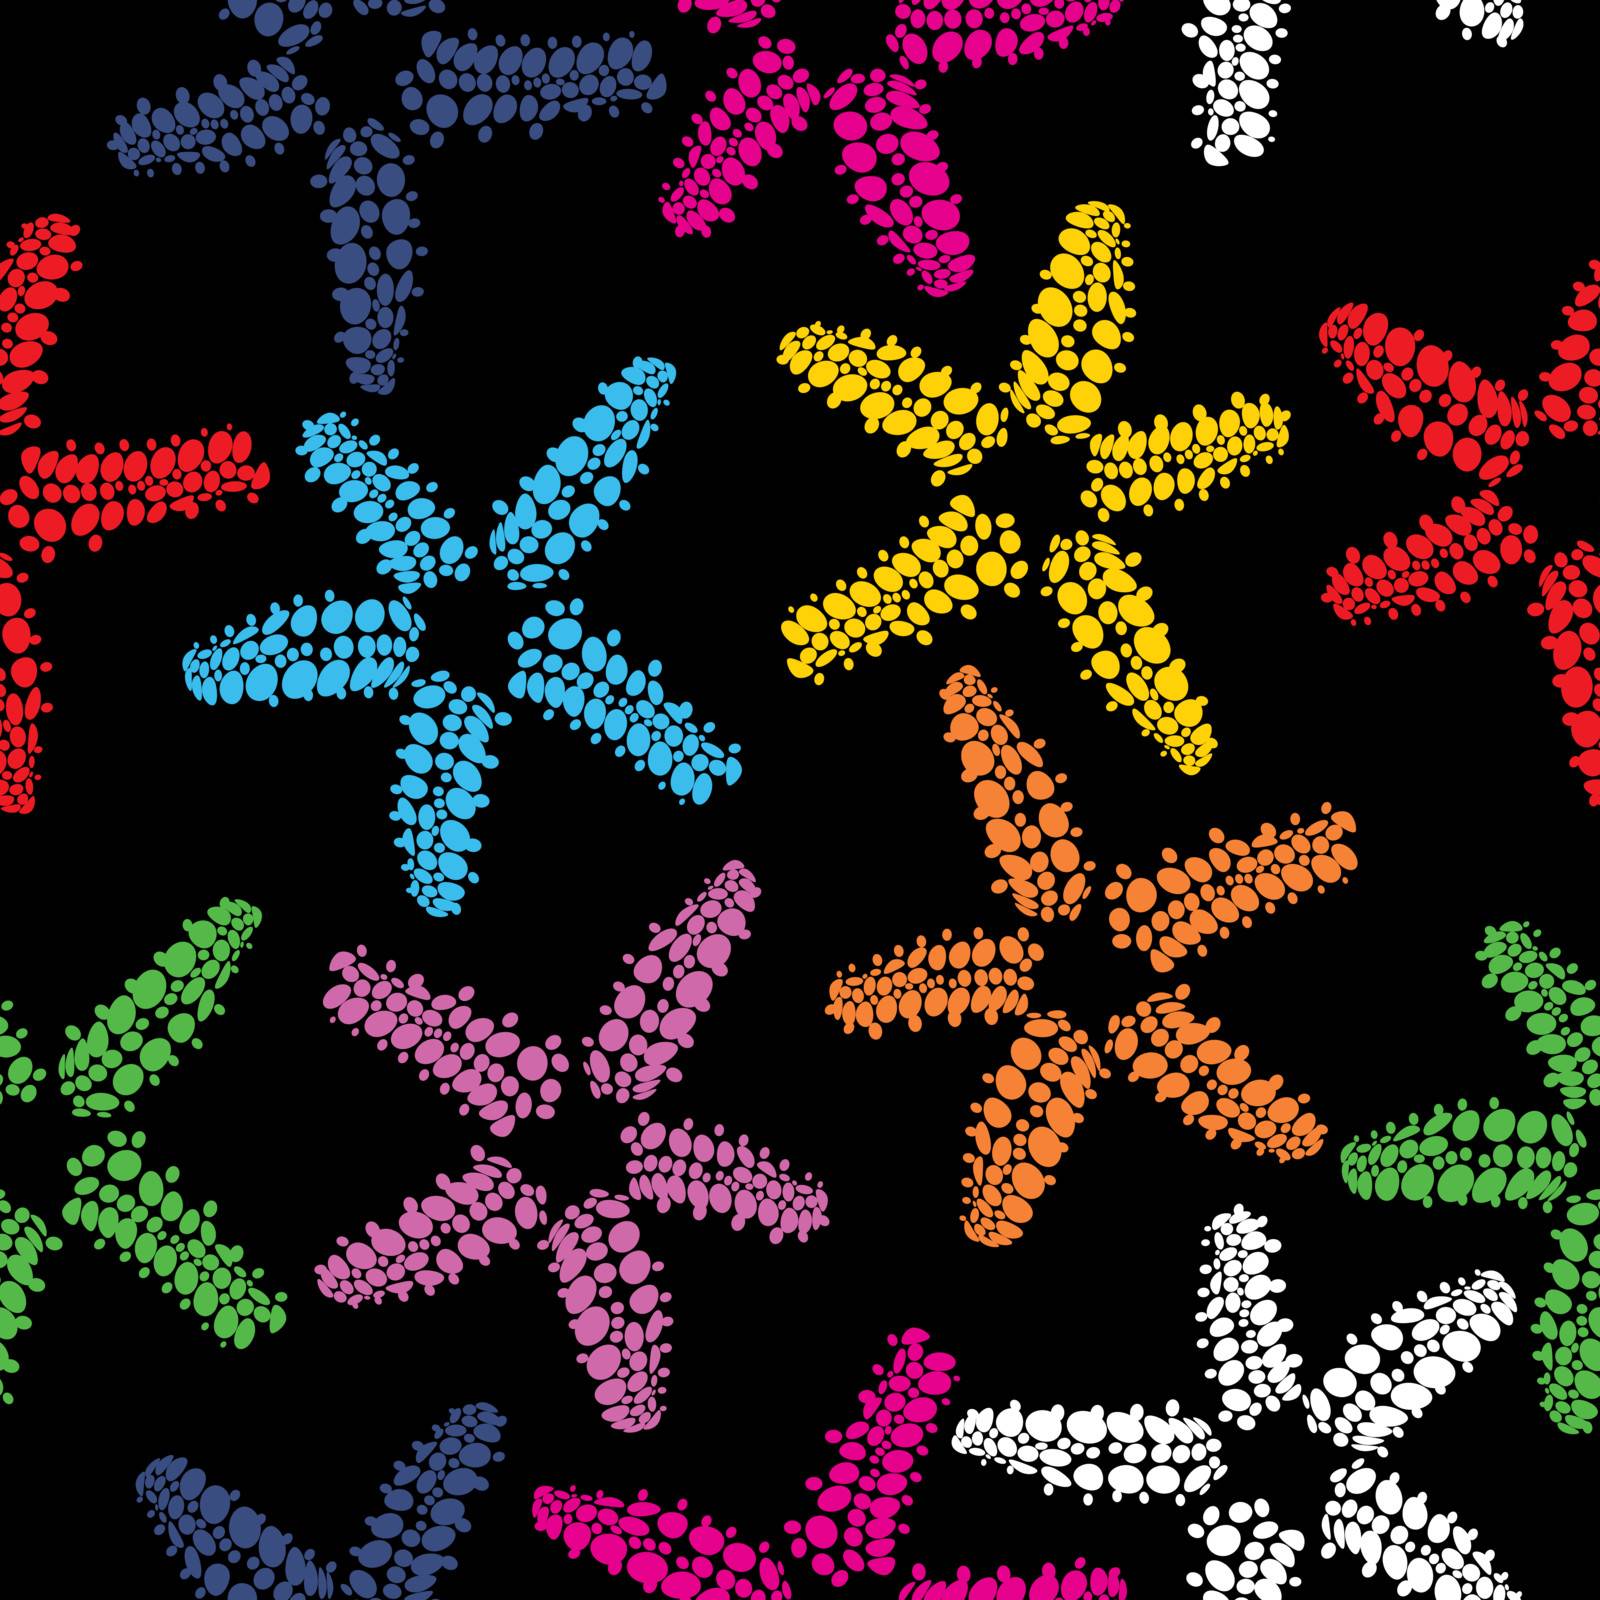 Starfish pattern by Lirch